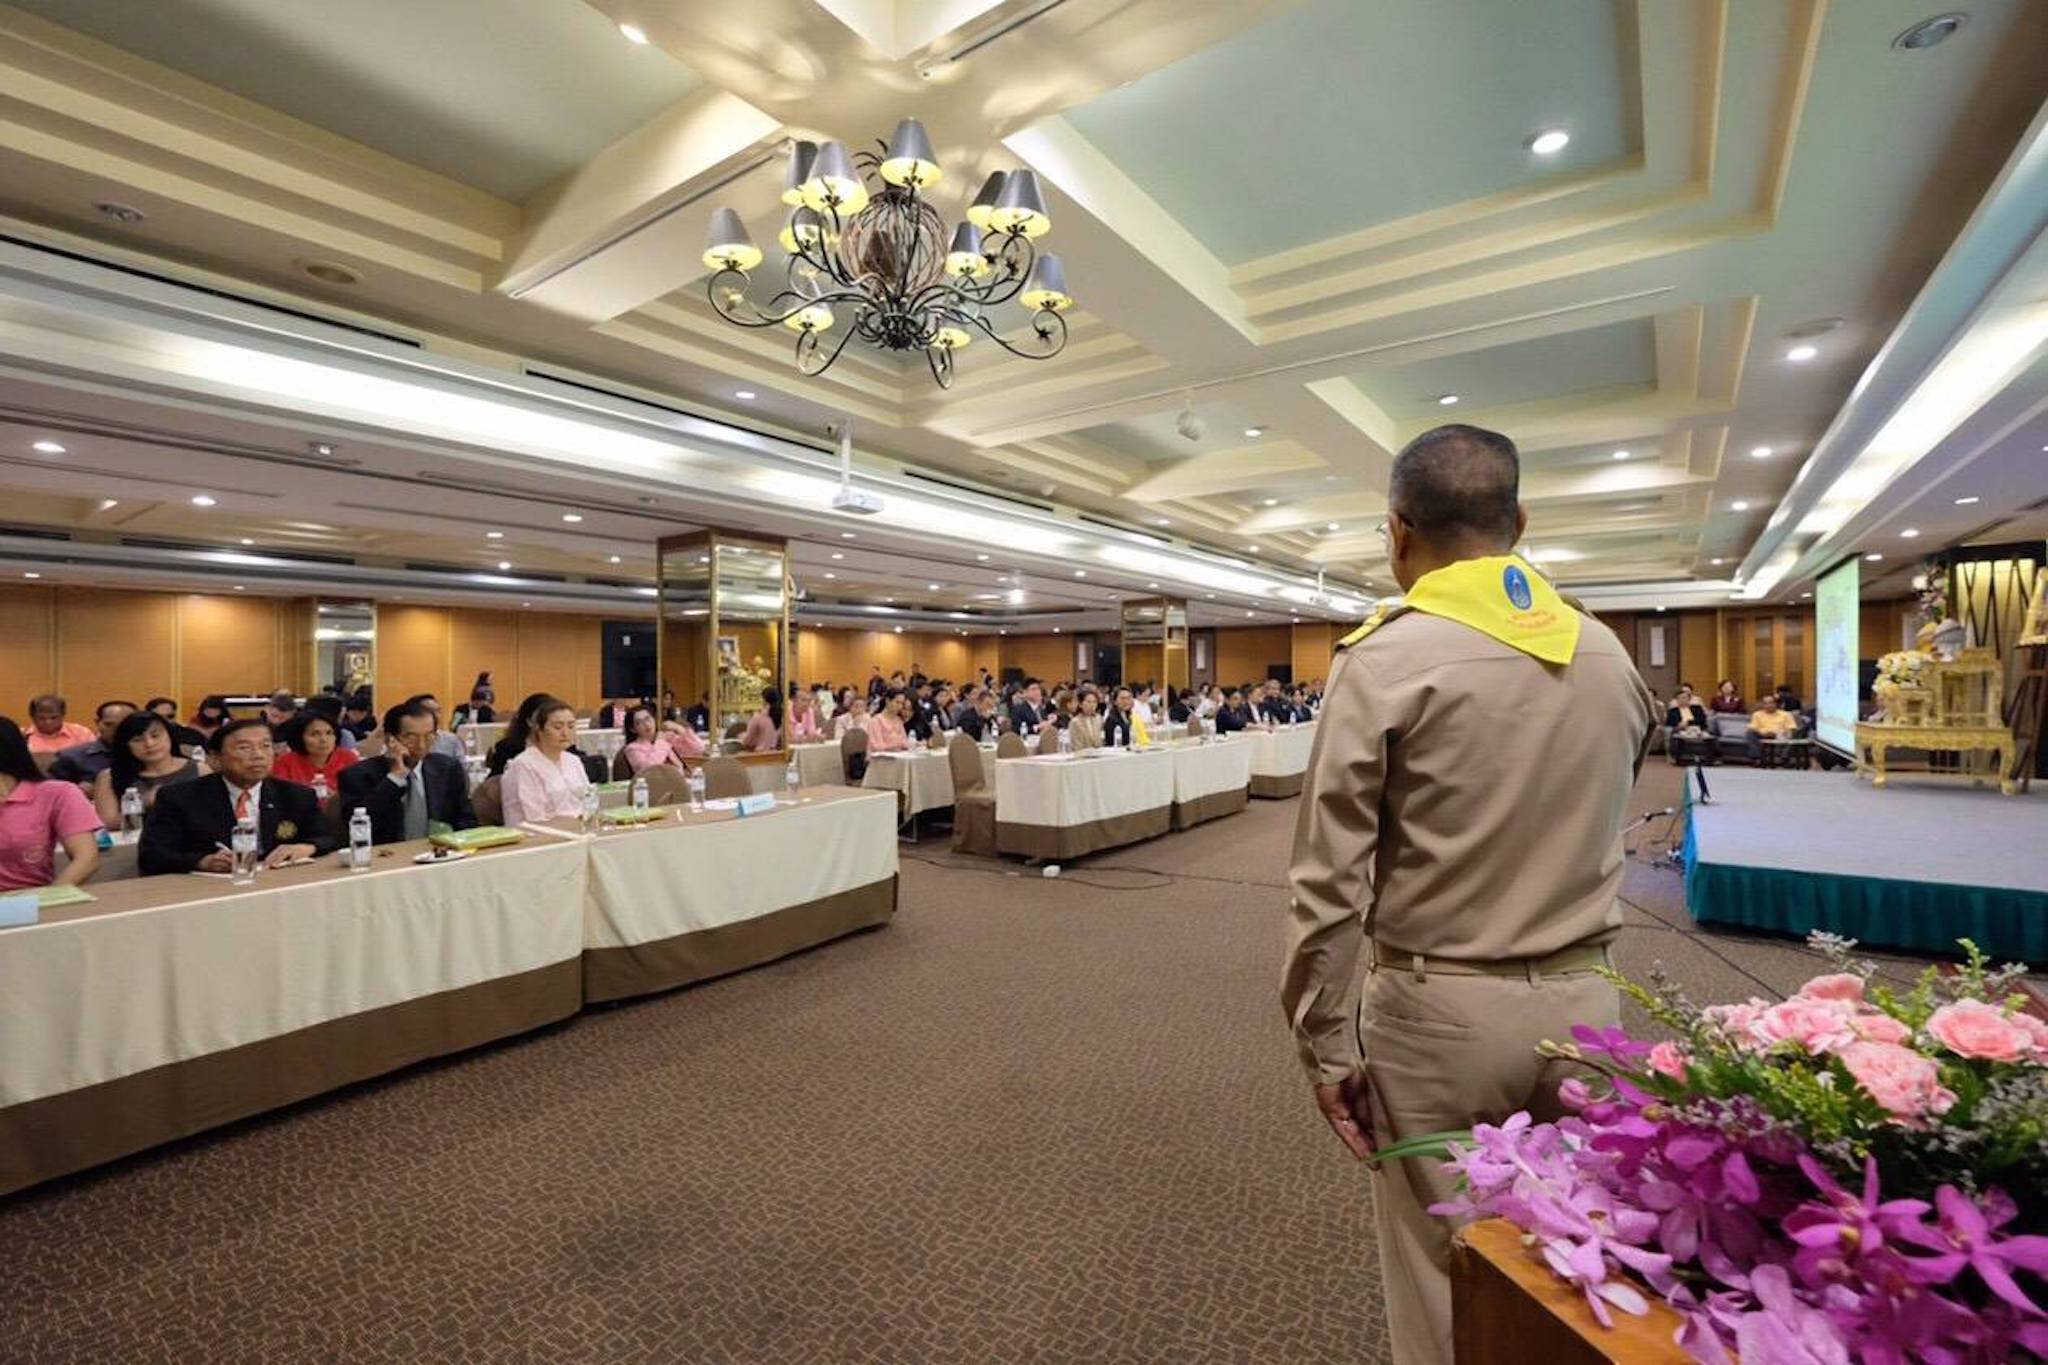 กิจกรรมการประชุมใหญ่สามัญประจำปีสมาคมสันนิบาตมูลนิธิสมาคมแห่งประเทศไทย วันที่ 25 ธันวาคม  2561         ณ โรงแรมรอยัลริเวอร์ เขตบางพลัด กรุงเทพฯ